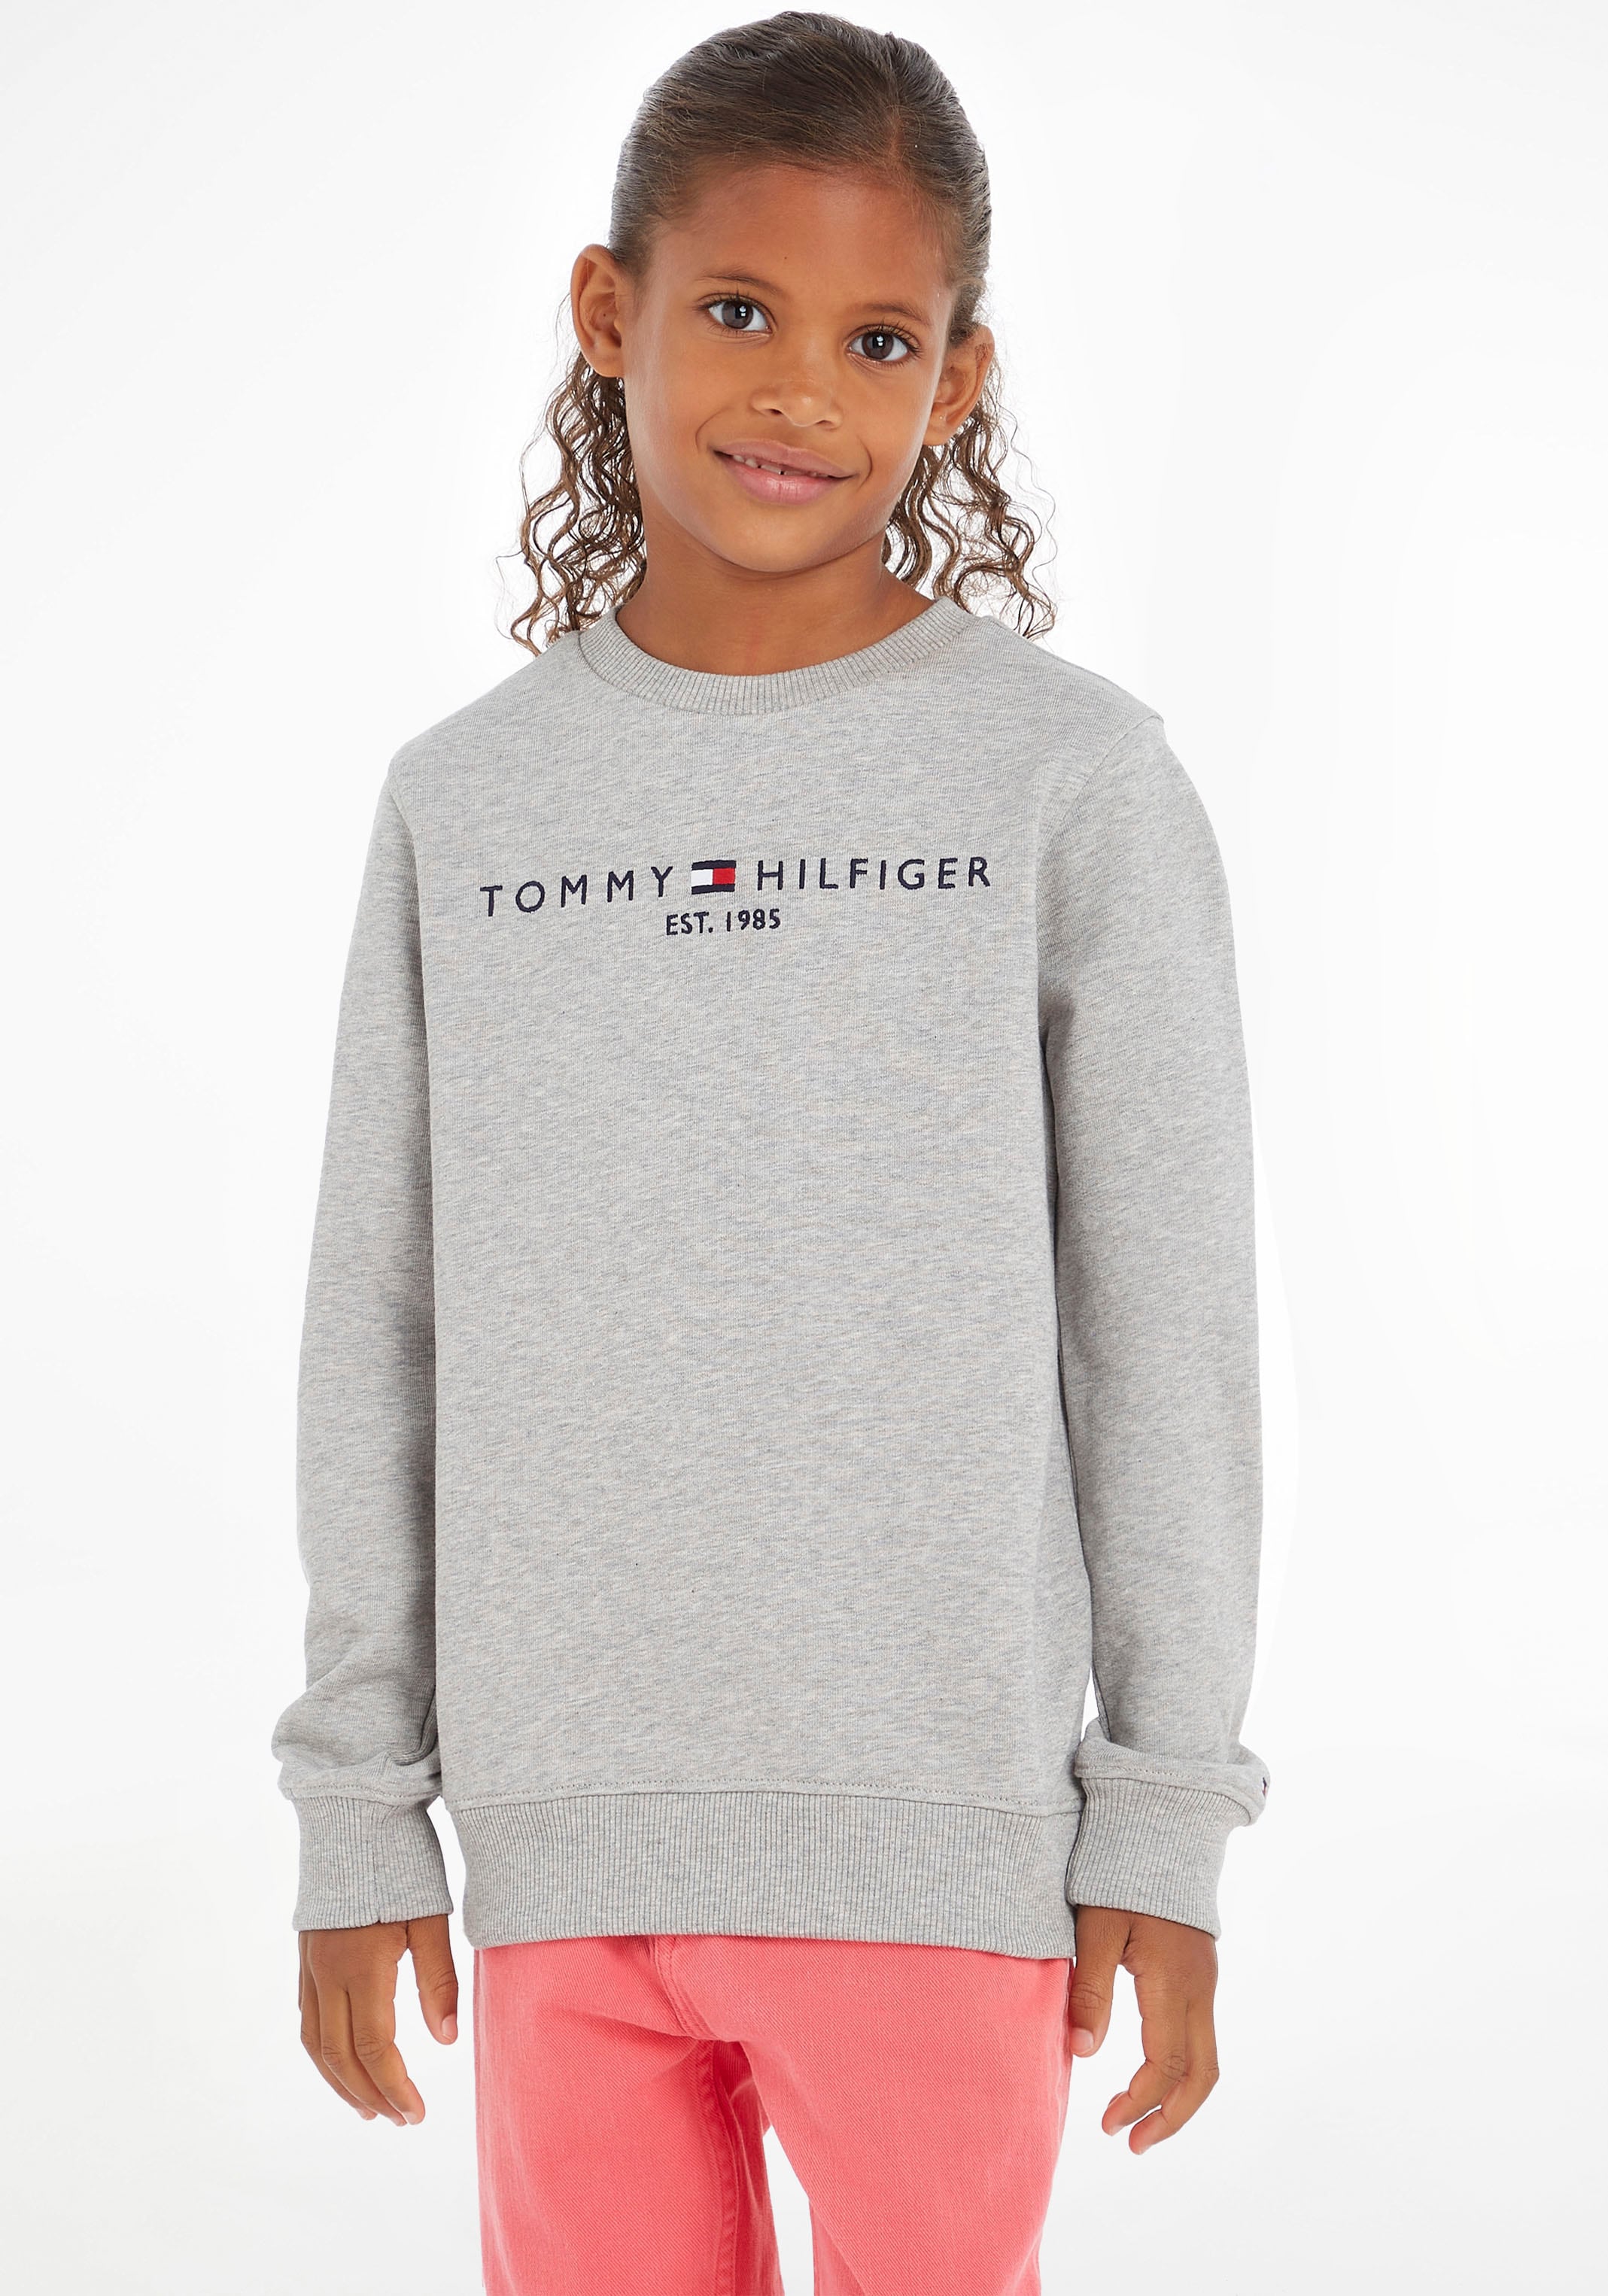 Tommy Hilfiger Kids Jungen Mädchen Kinder MiniMe,für SWEATSHIRT«, bei OTTO und »ESSENTIAL Junior Sweatshirt